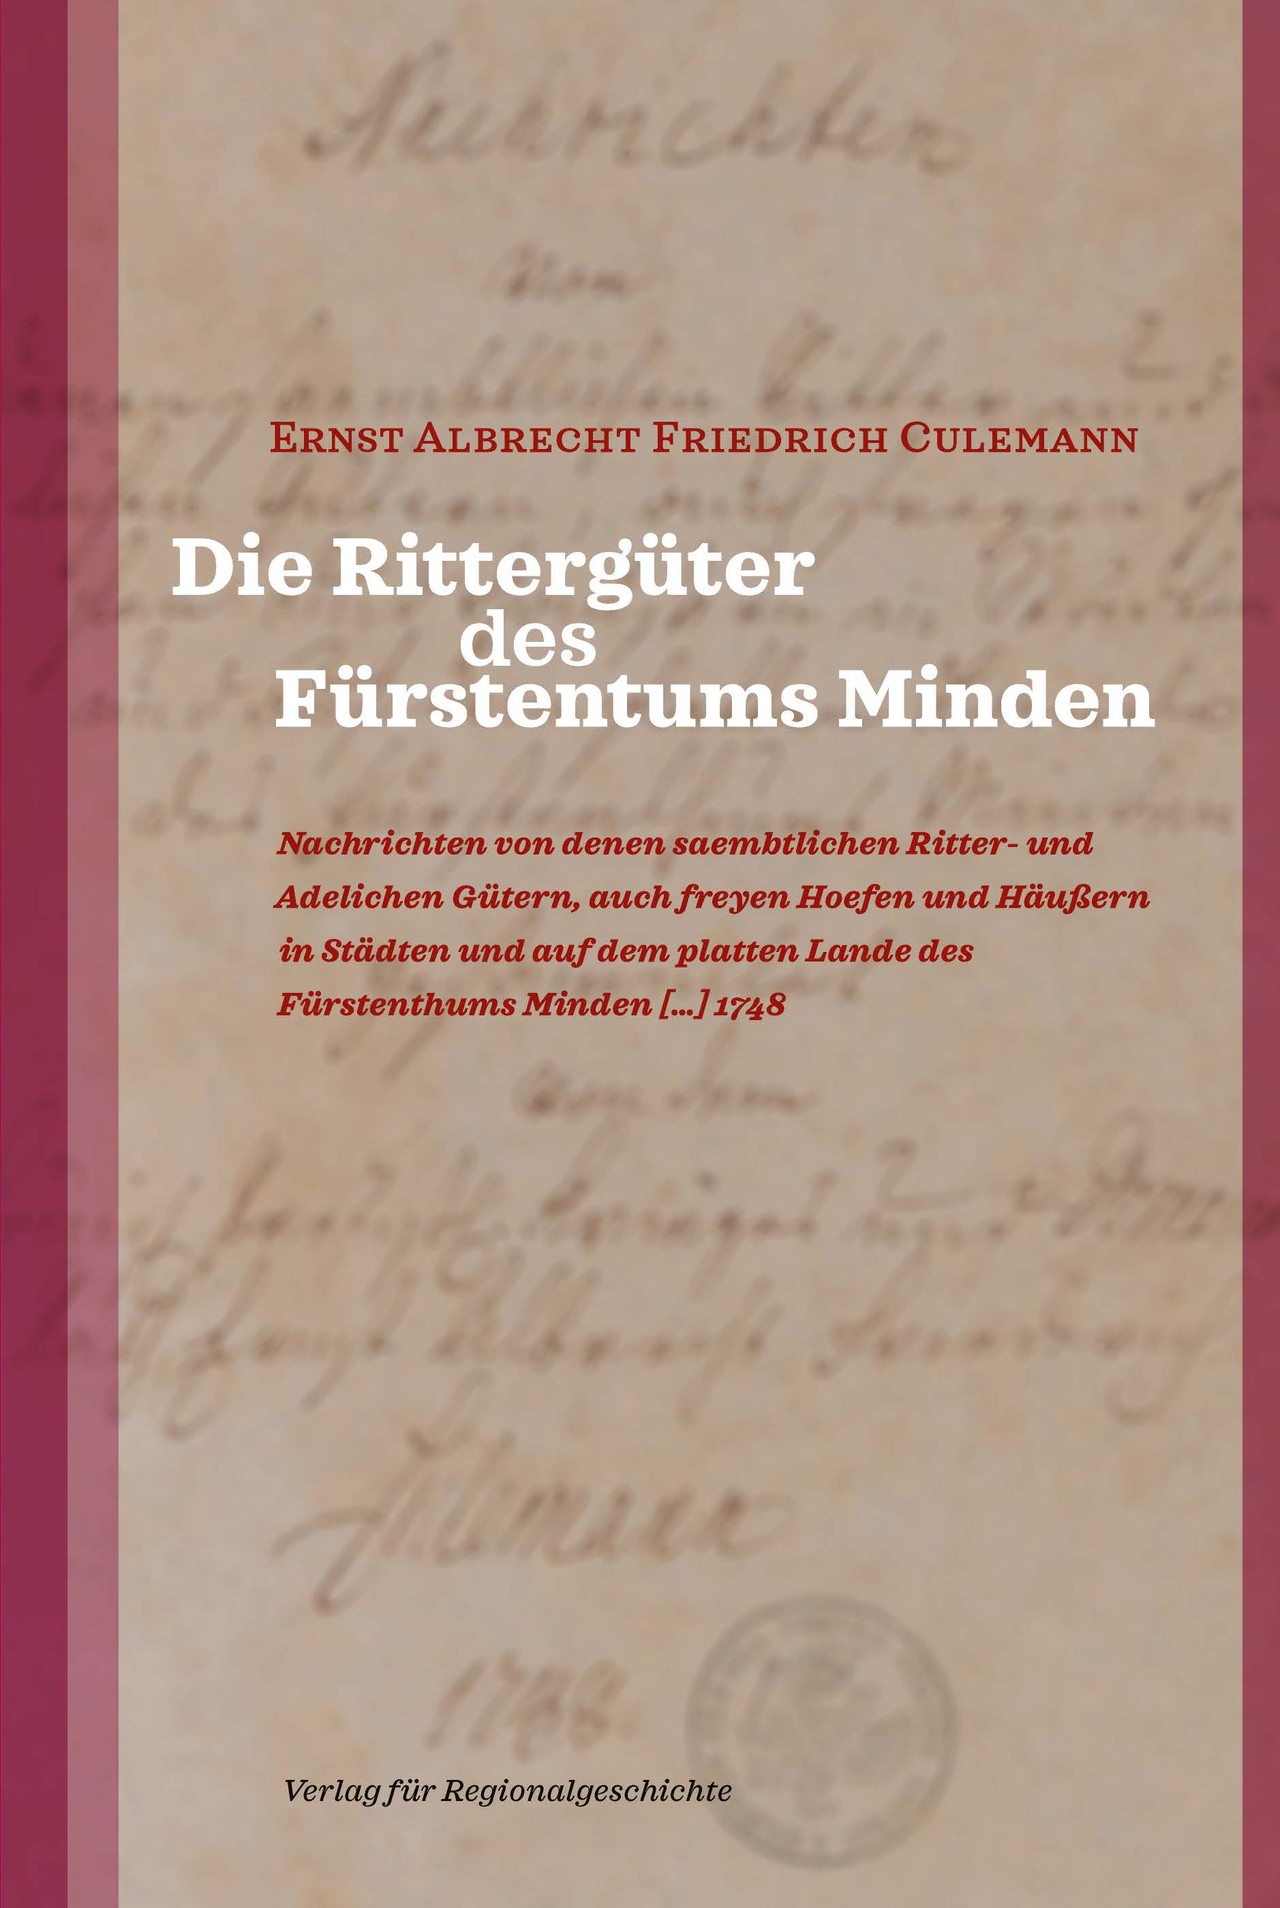 Ernst Albrecht Friedrich Culemann, Die Rittergüter des Fürstentums Minden, herausgegeben von Sebastian Schröder.